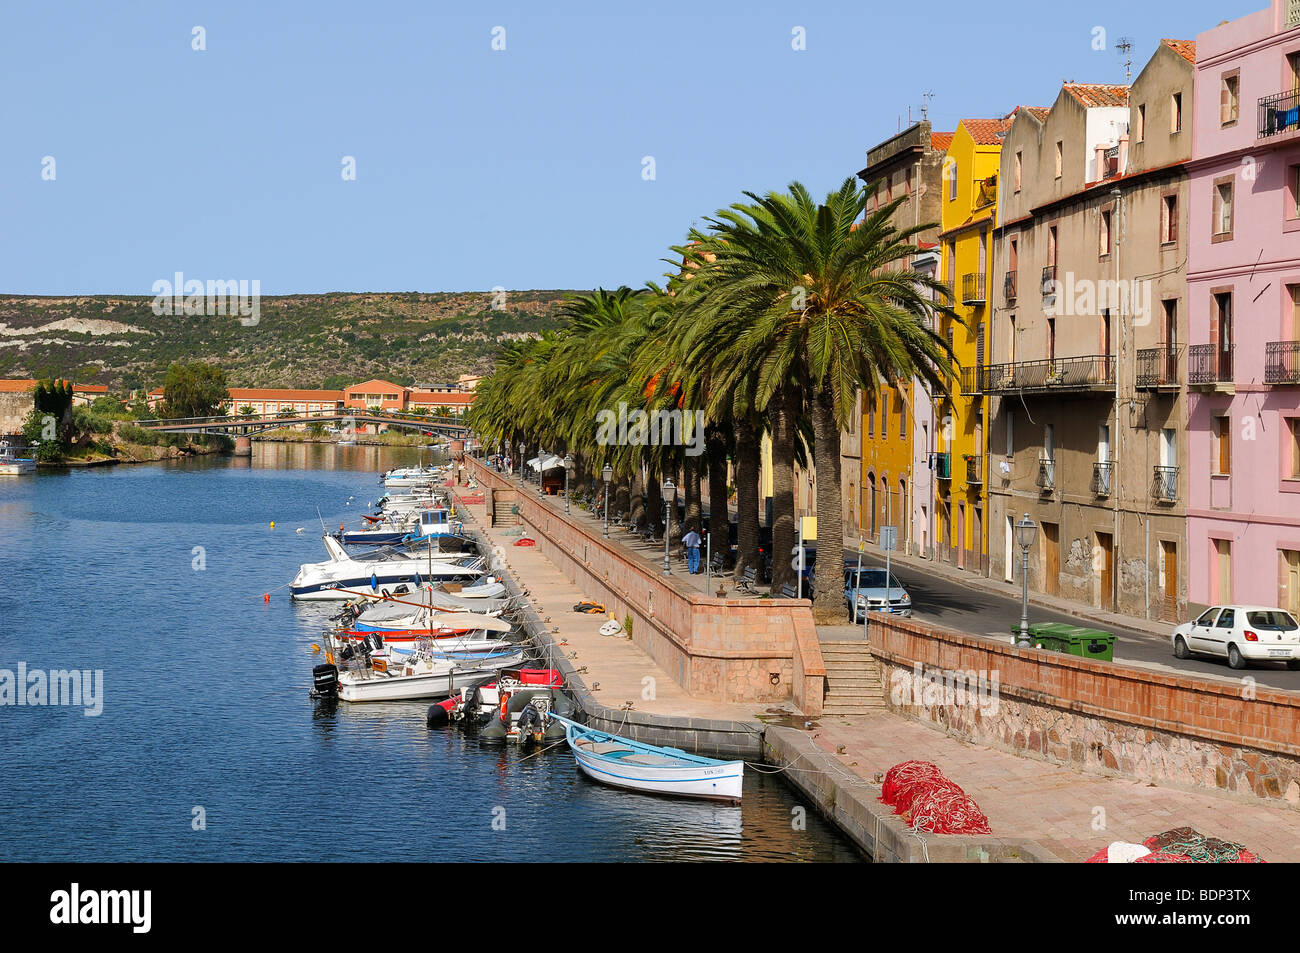 Boote auf dem Fluss Temo und die historische Altstadt von Bosa, Palmen entlang der Promenade, Bosa, Oristano, Sardinien, Italien Stockfoto